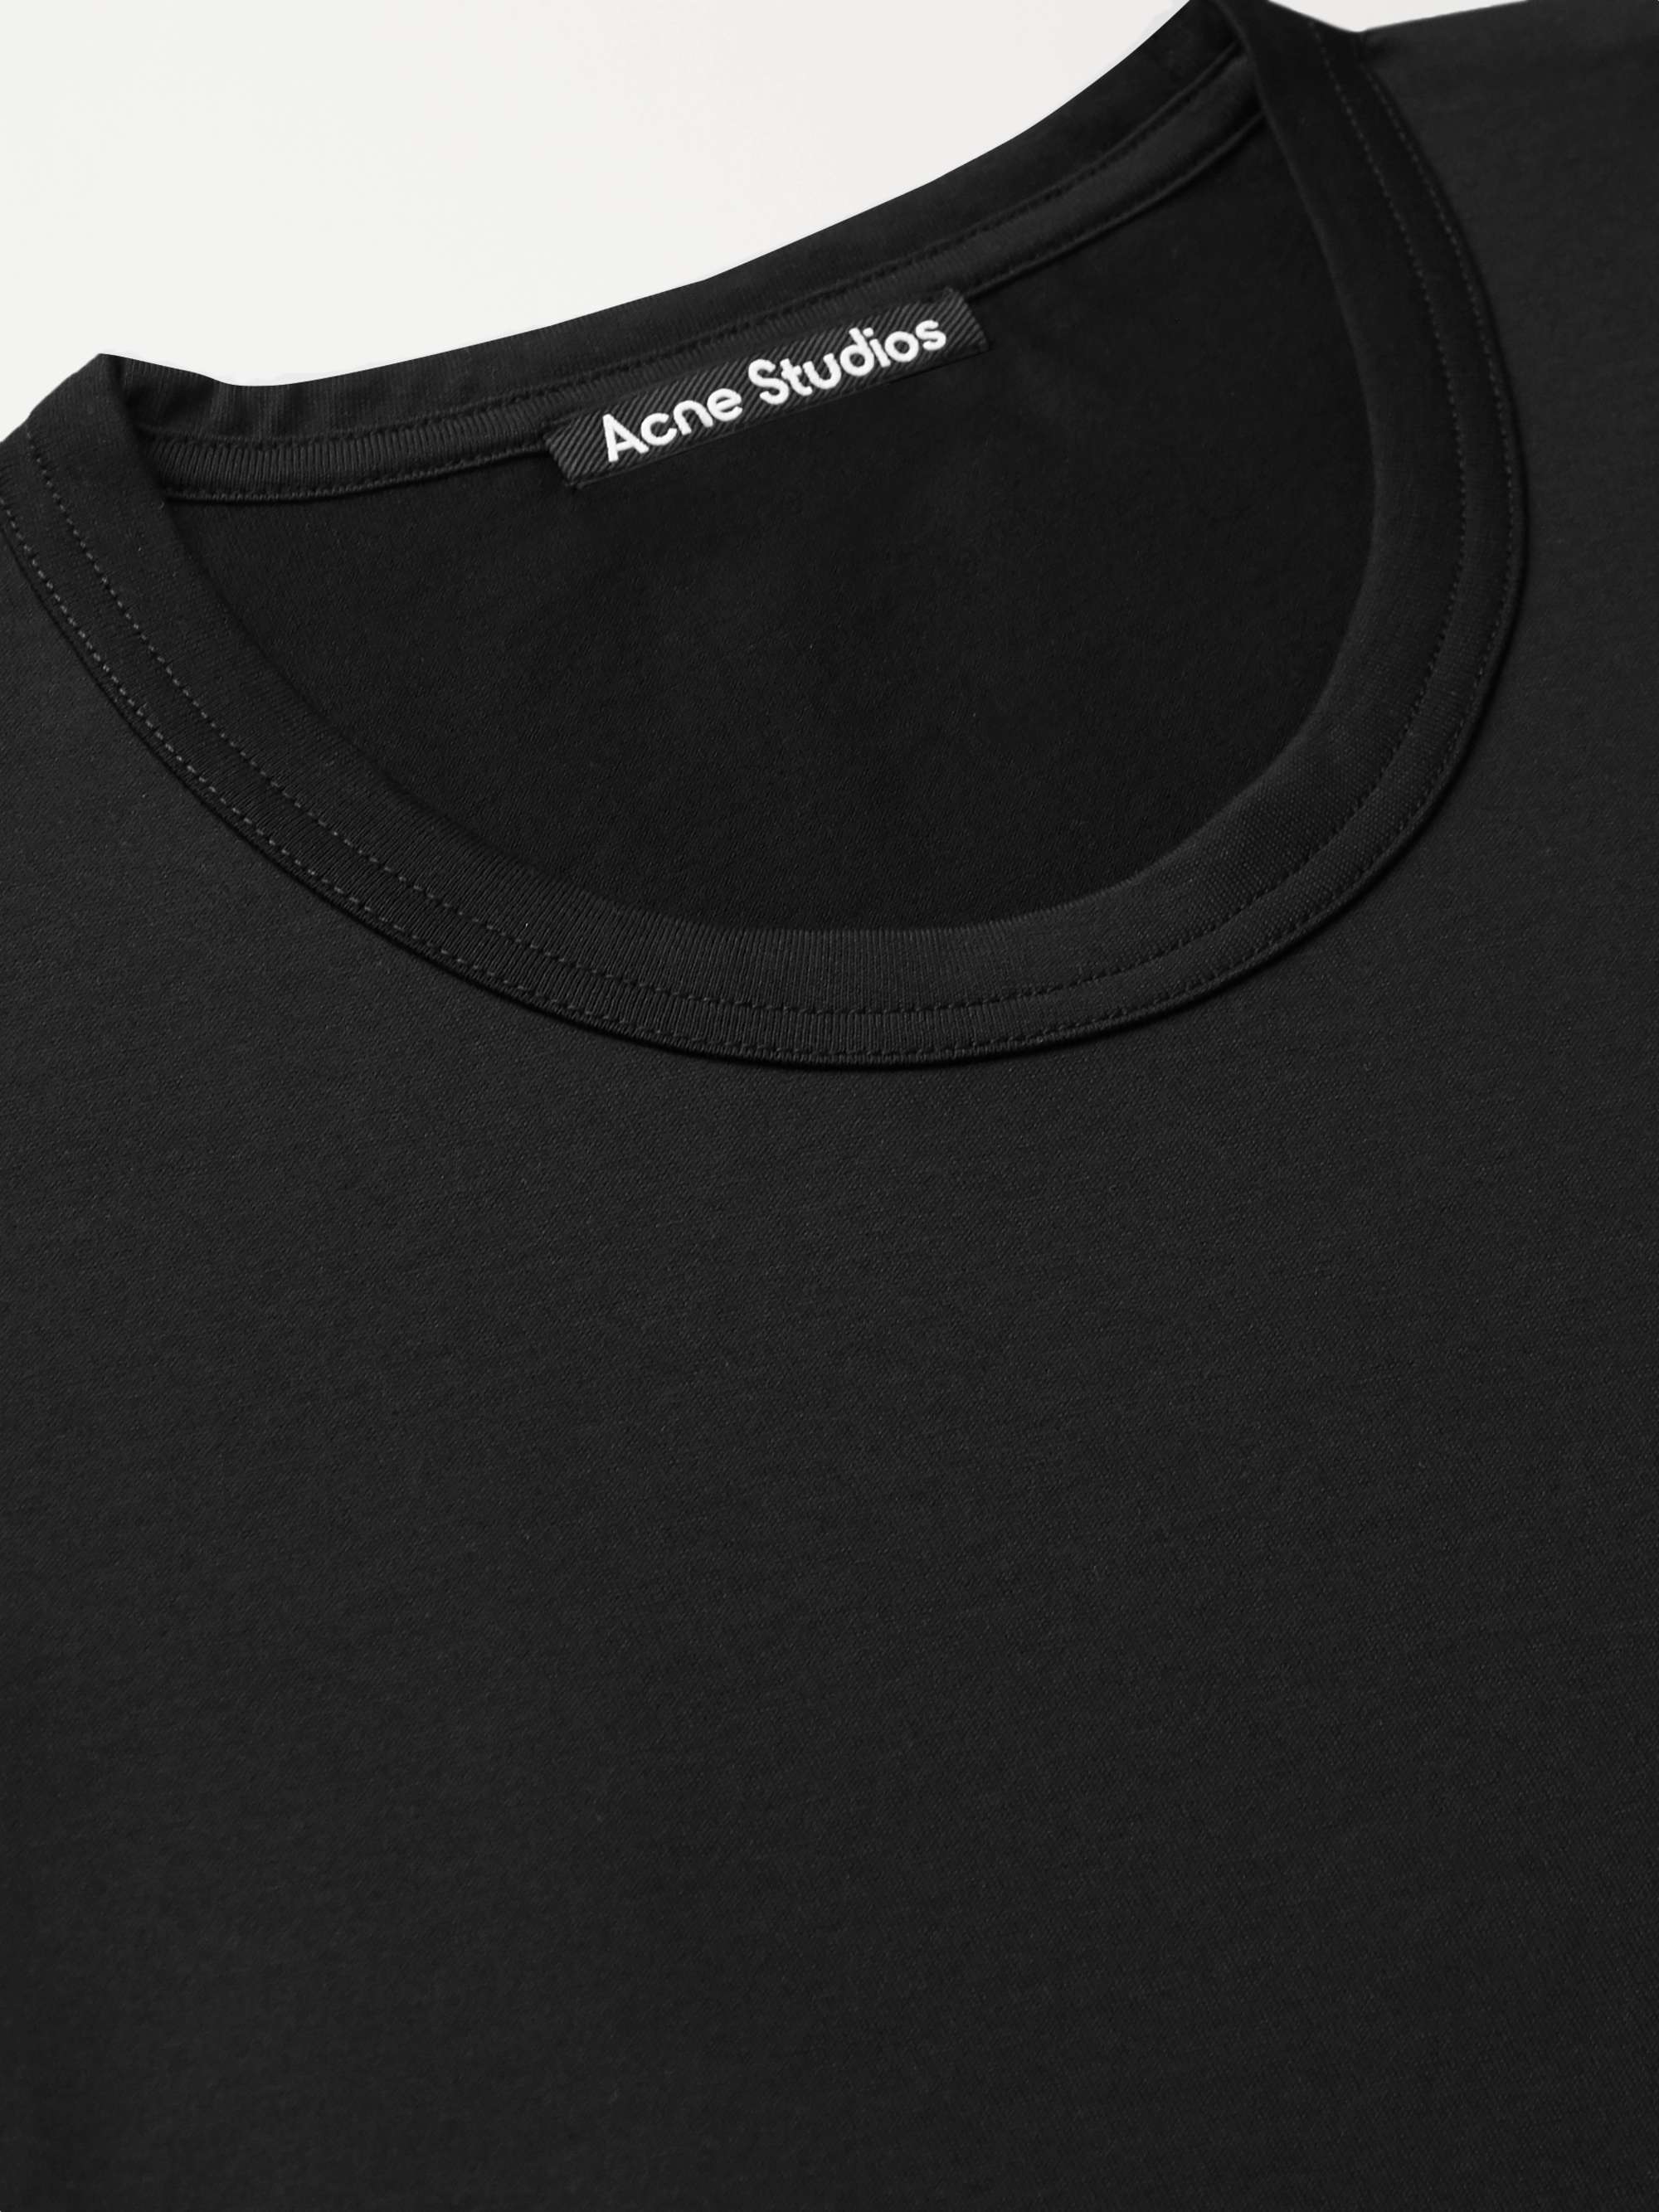 ACNE STUDIOS Nash Logo-Appliquéd Cotton-Jersey T-Shirt